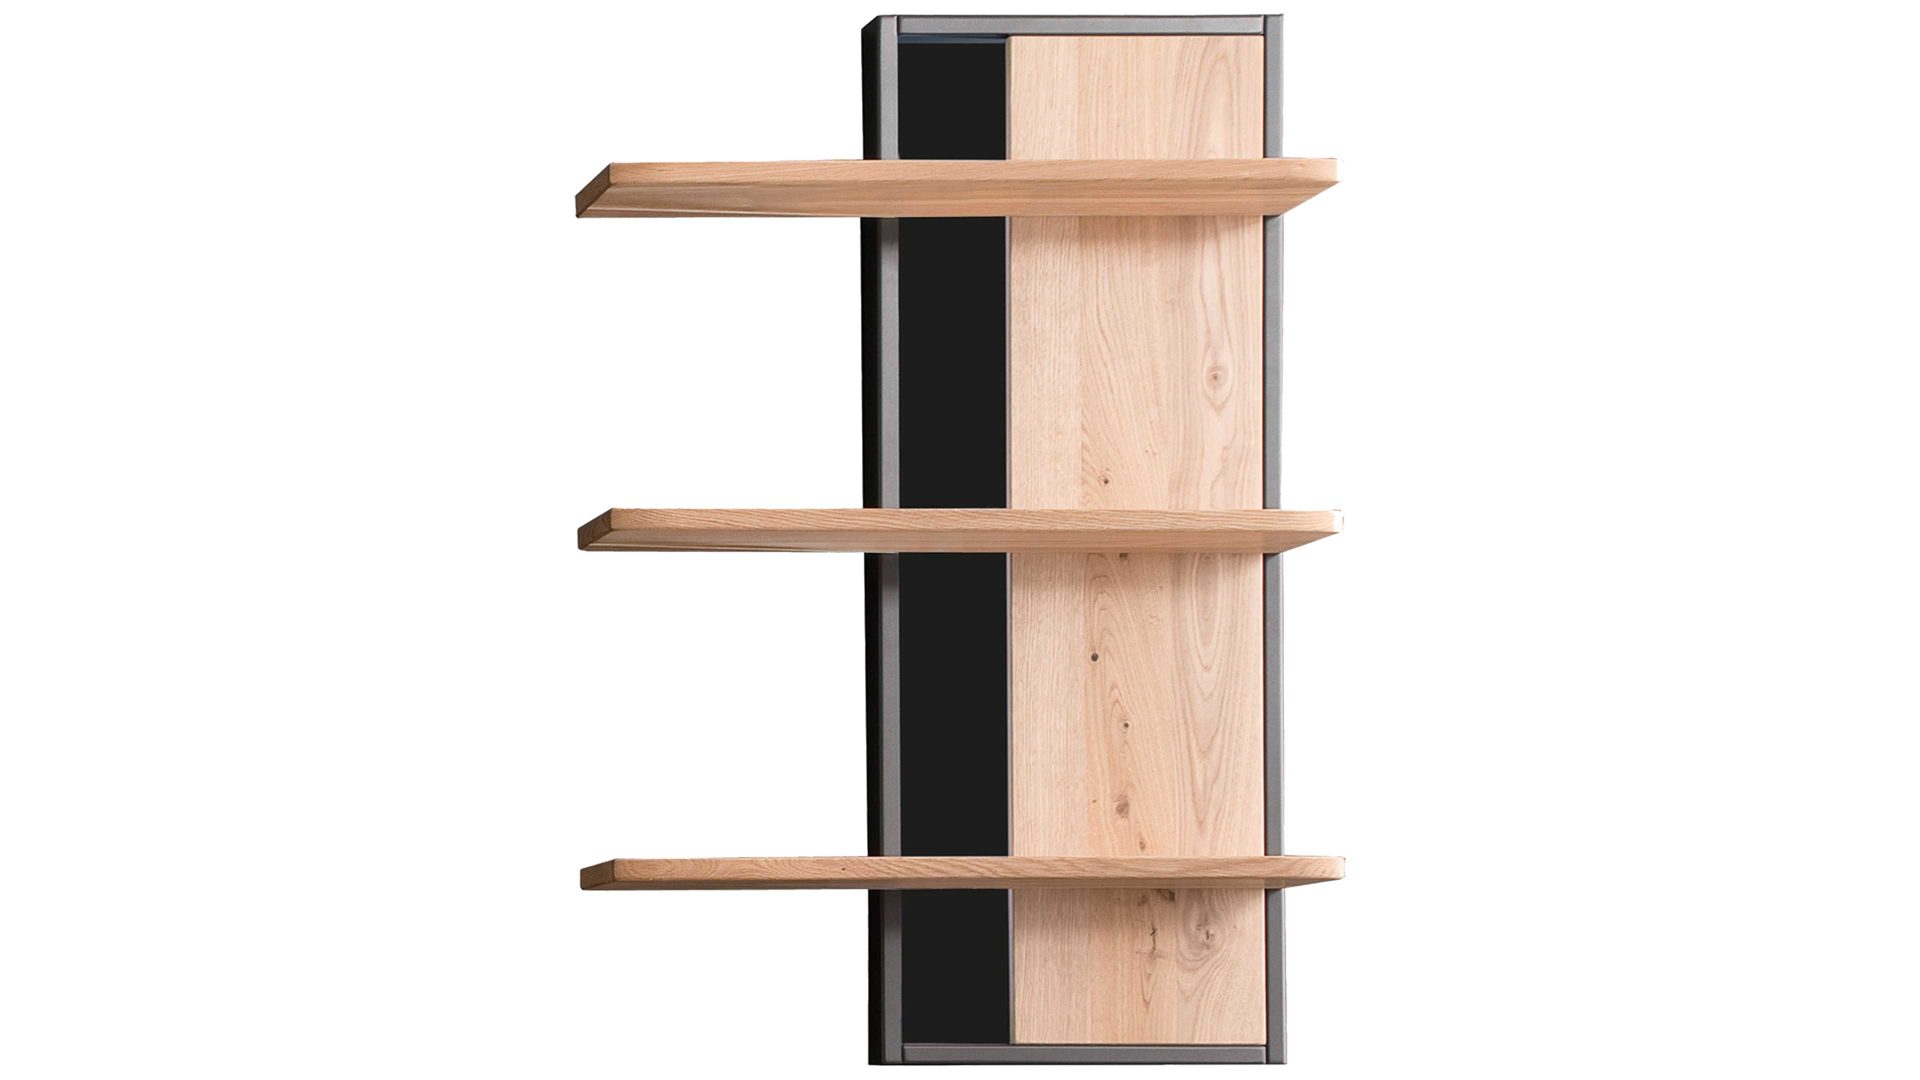 Wandregal Mca furniture aus Holz in Holzfarben Wohnprogramm Portland - Wandregal Asteiche bianco & Anthrazit – drei Böden, Höhe ca. 105 cm